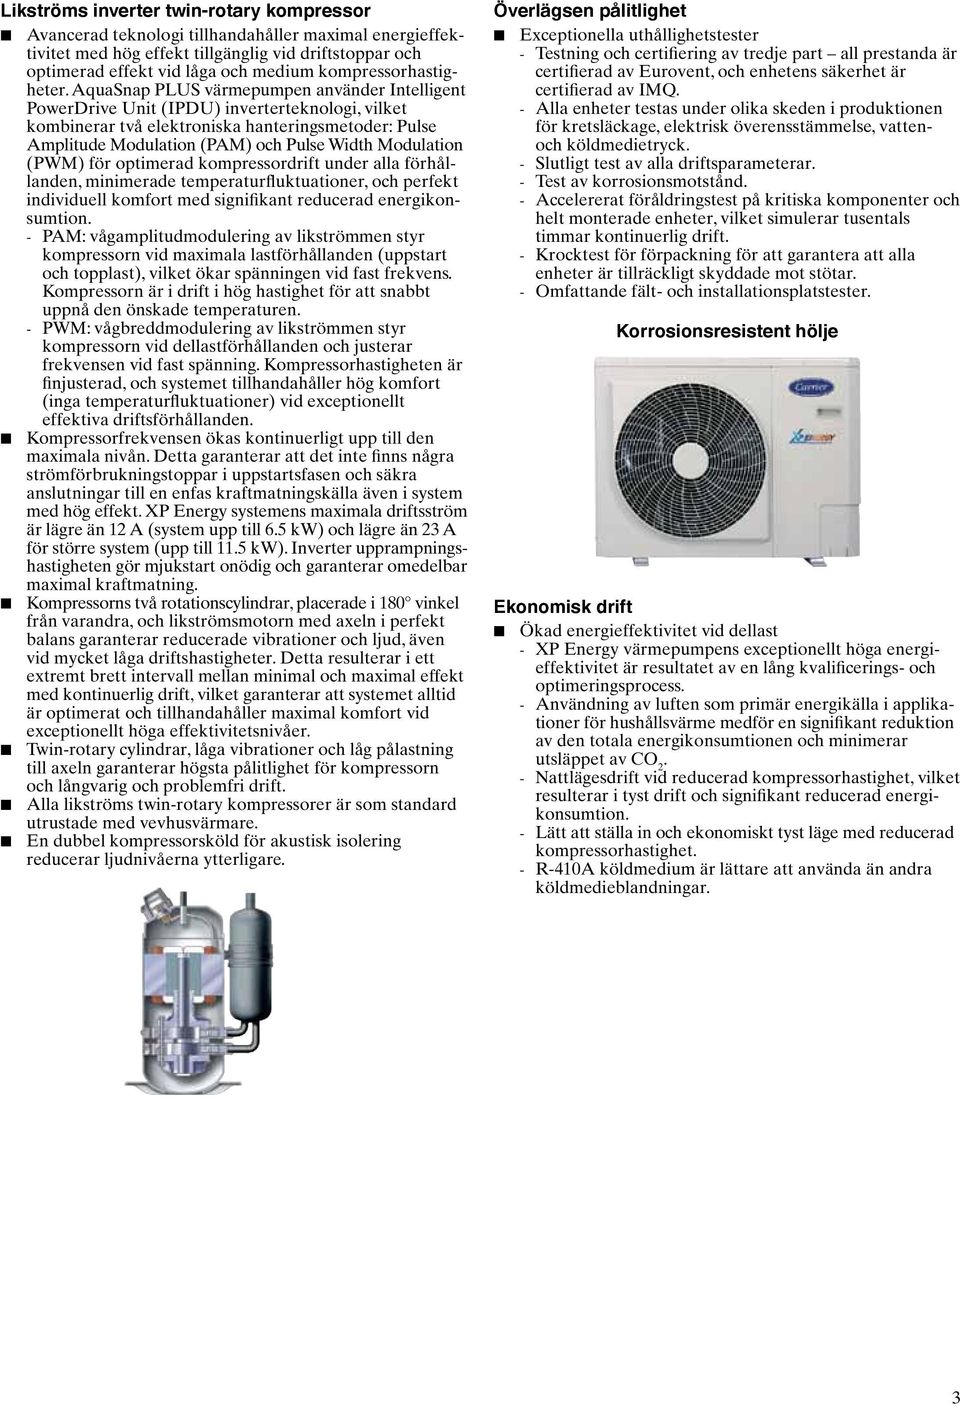 AquaSnap PLUS värmepumpen använder Intelligent PowerDrive Unit (IPDU) inverterteknologi, vilket kombinerar två elektroniska hanteringsmetoder: Pulse Amplitude Modulation (PAM) och Pulse Width